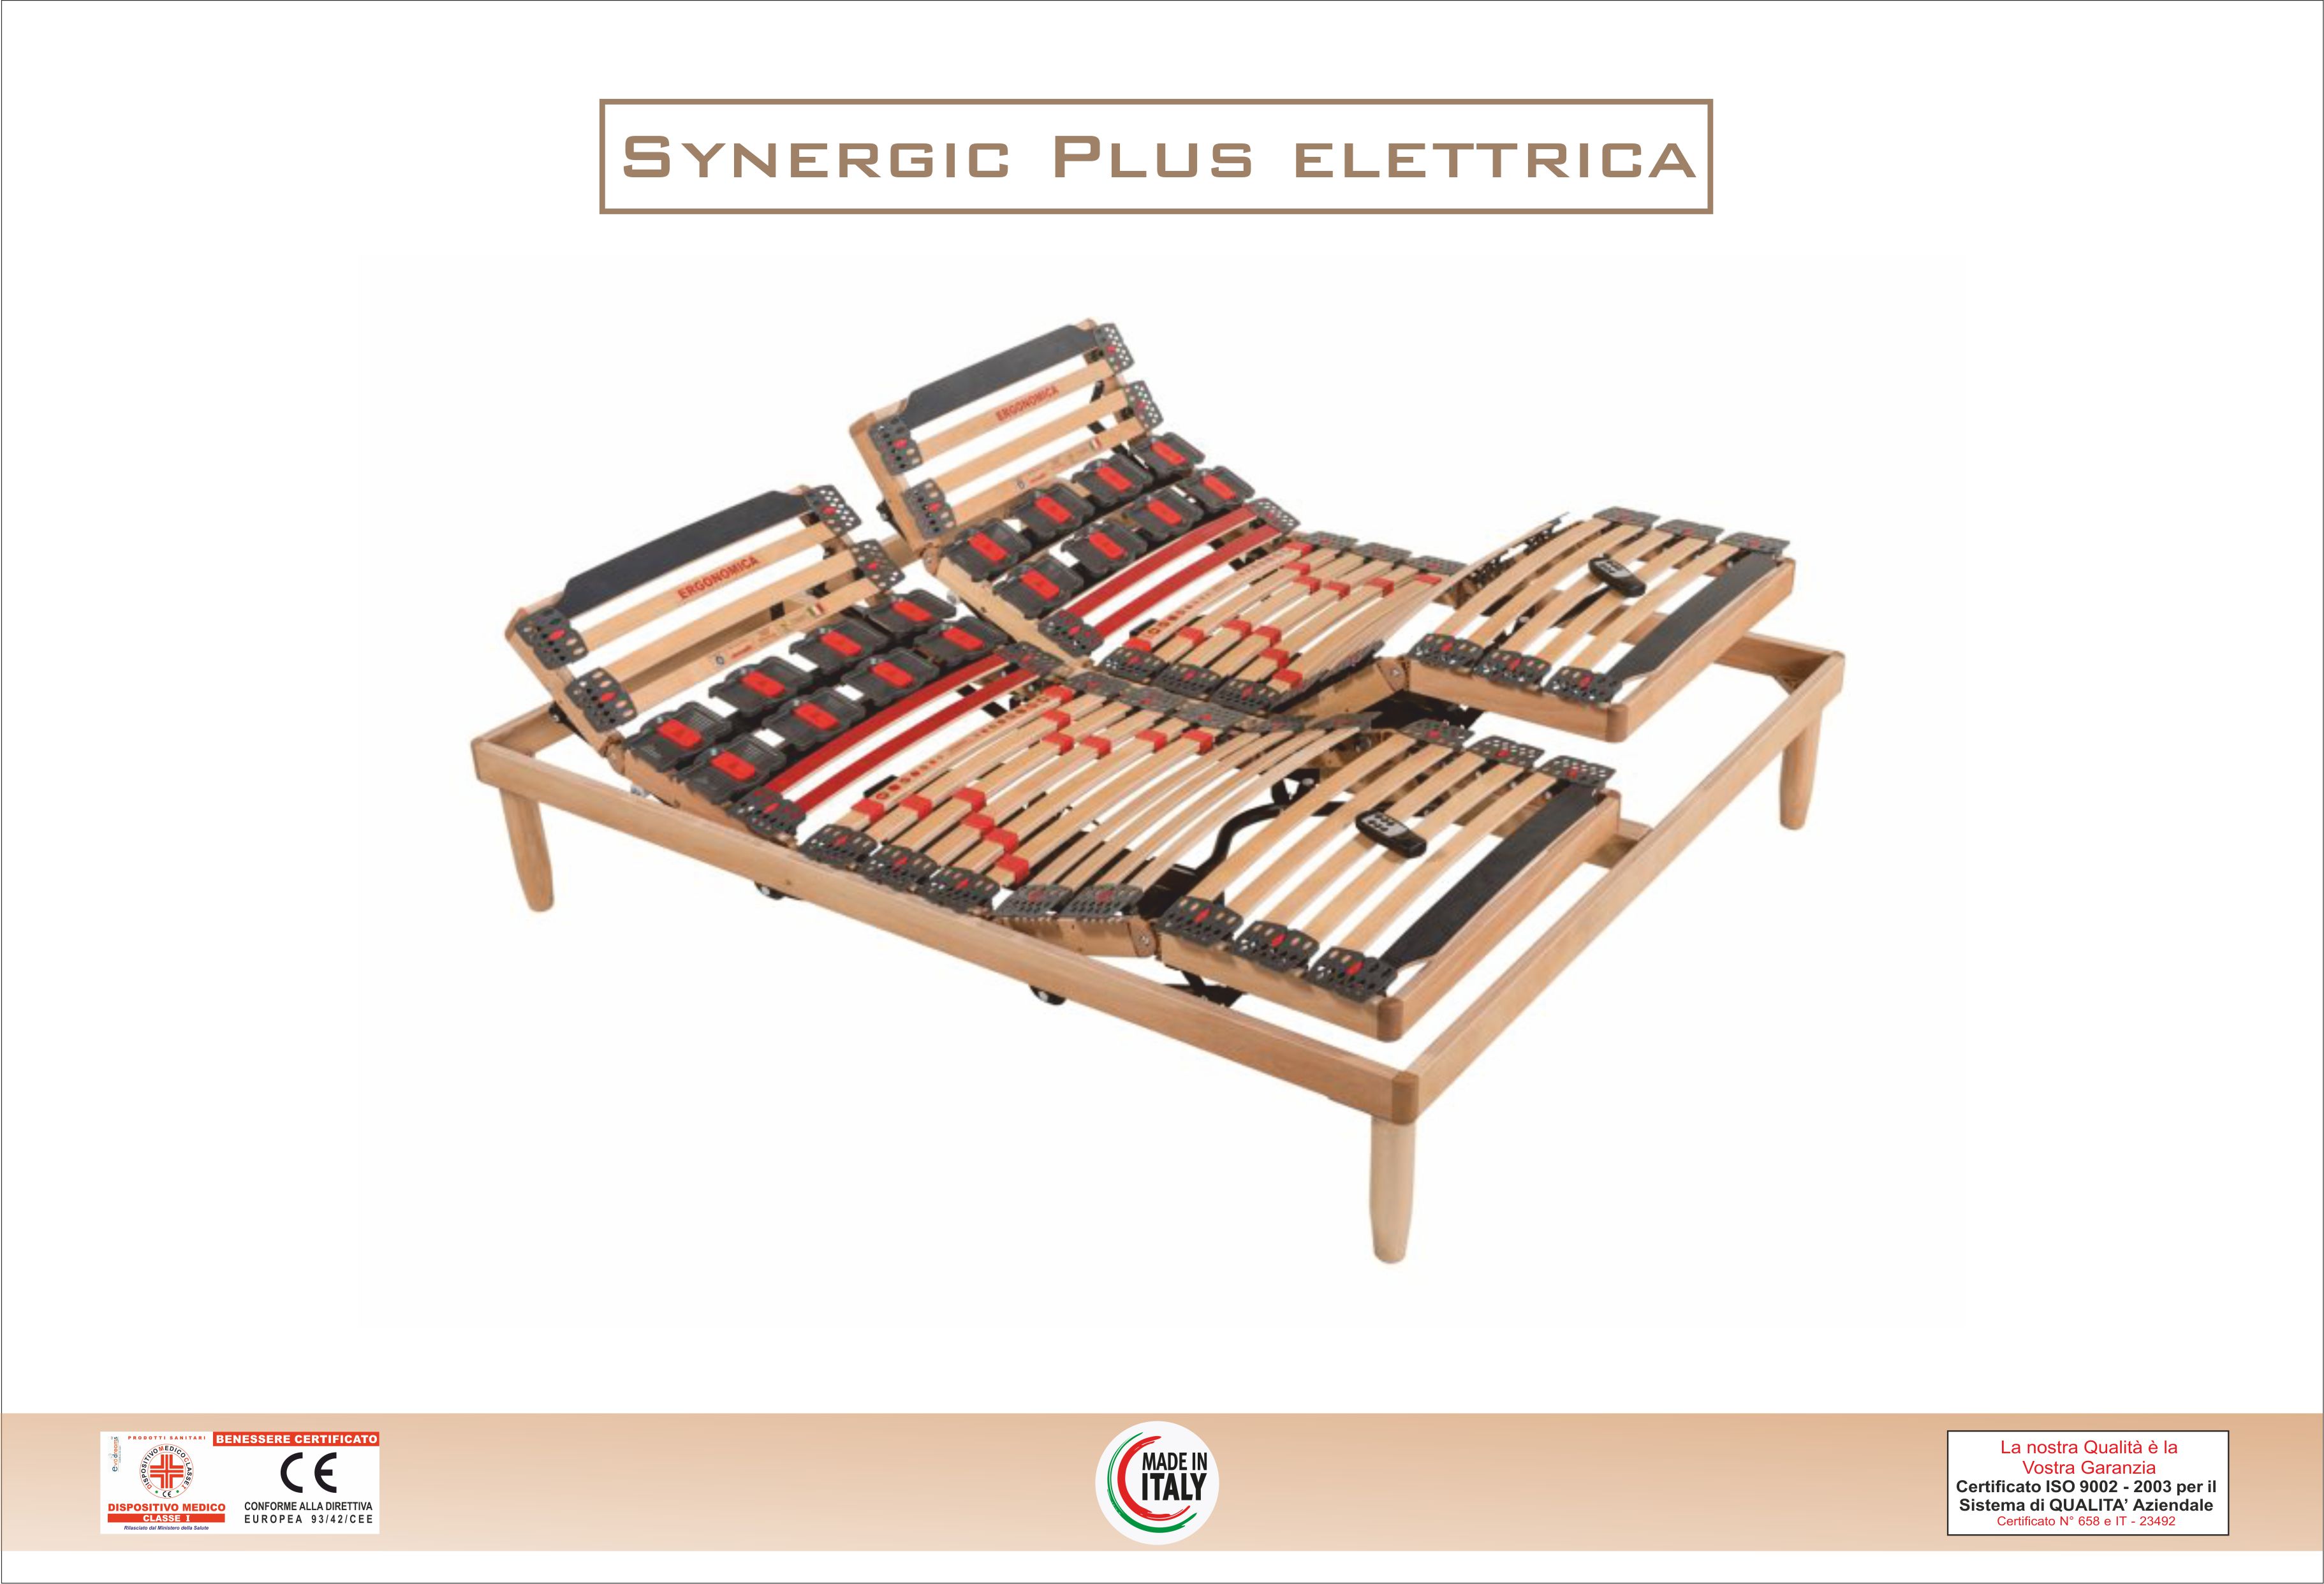 Synergic Plus Elettrica